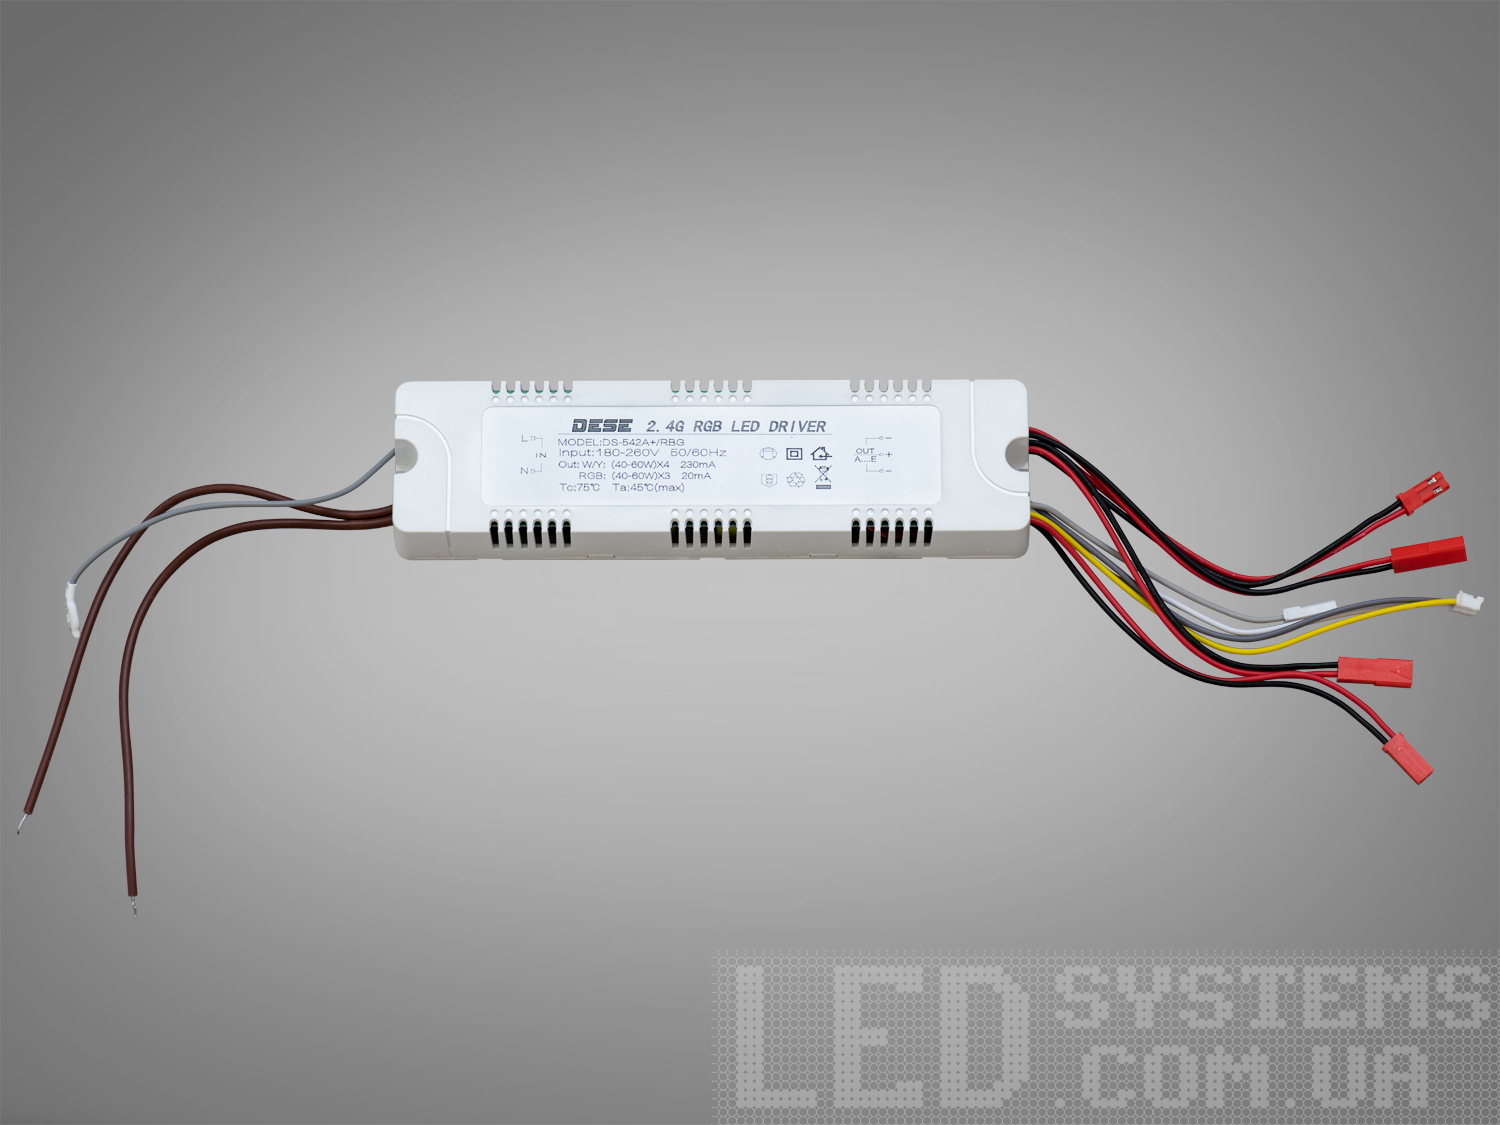  Блок живлення для світлодіодних люстр c RGB-підсвічуванням, 240WЭлектрофурнитура, Трансформаторы и ПРУ